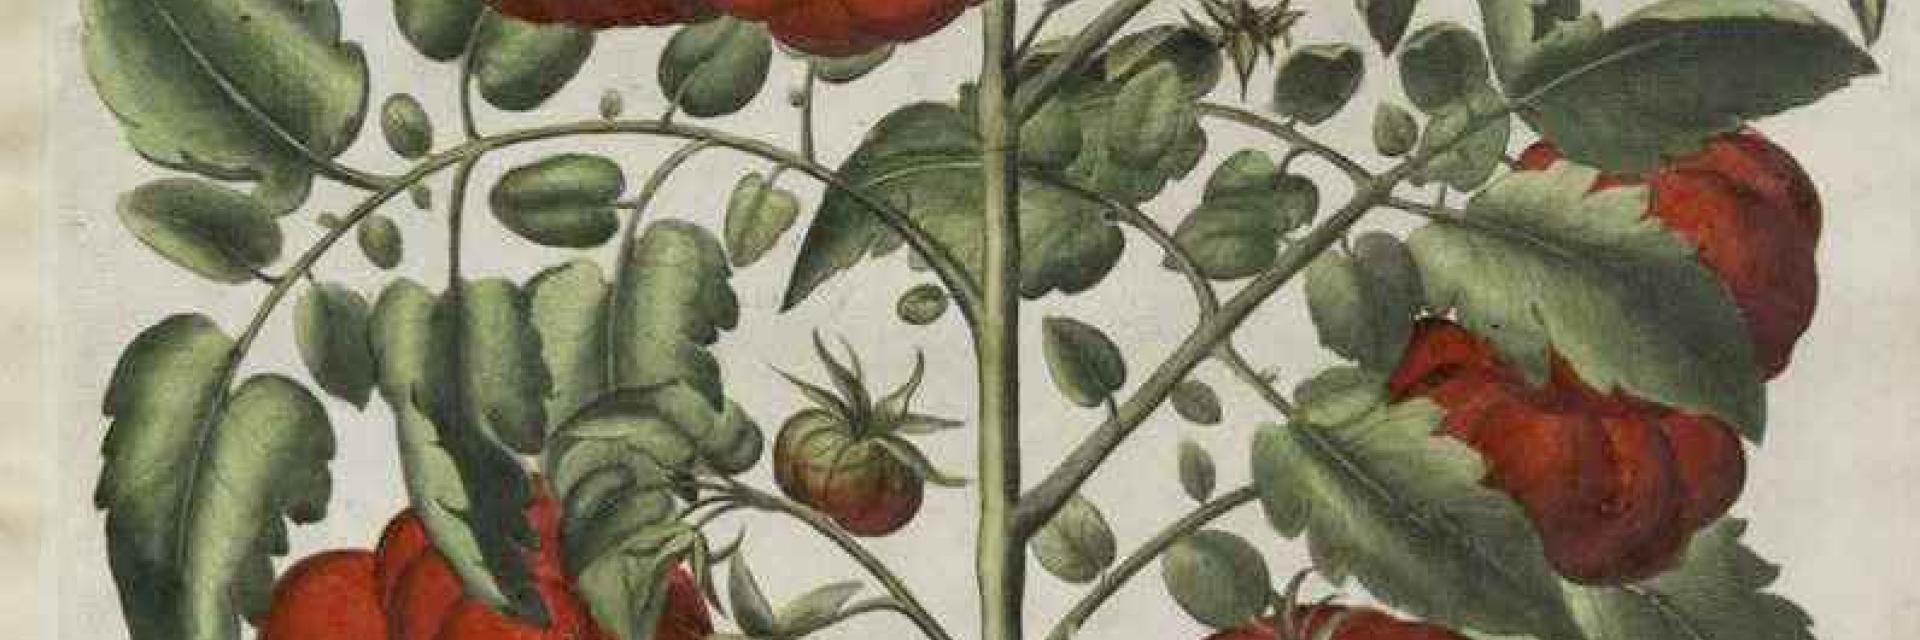 Raffigurazione del pomodoro (“Poma amoris fructu rubro”) del 1620